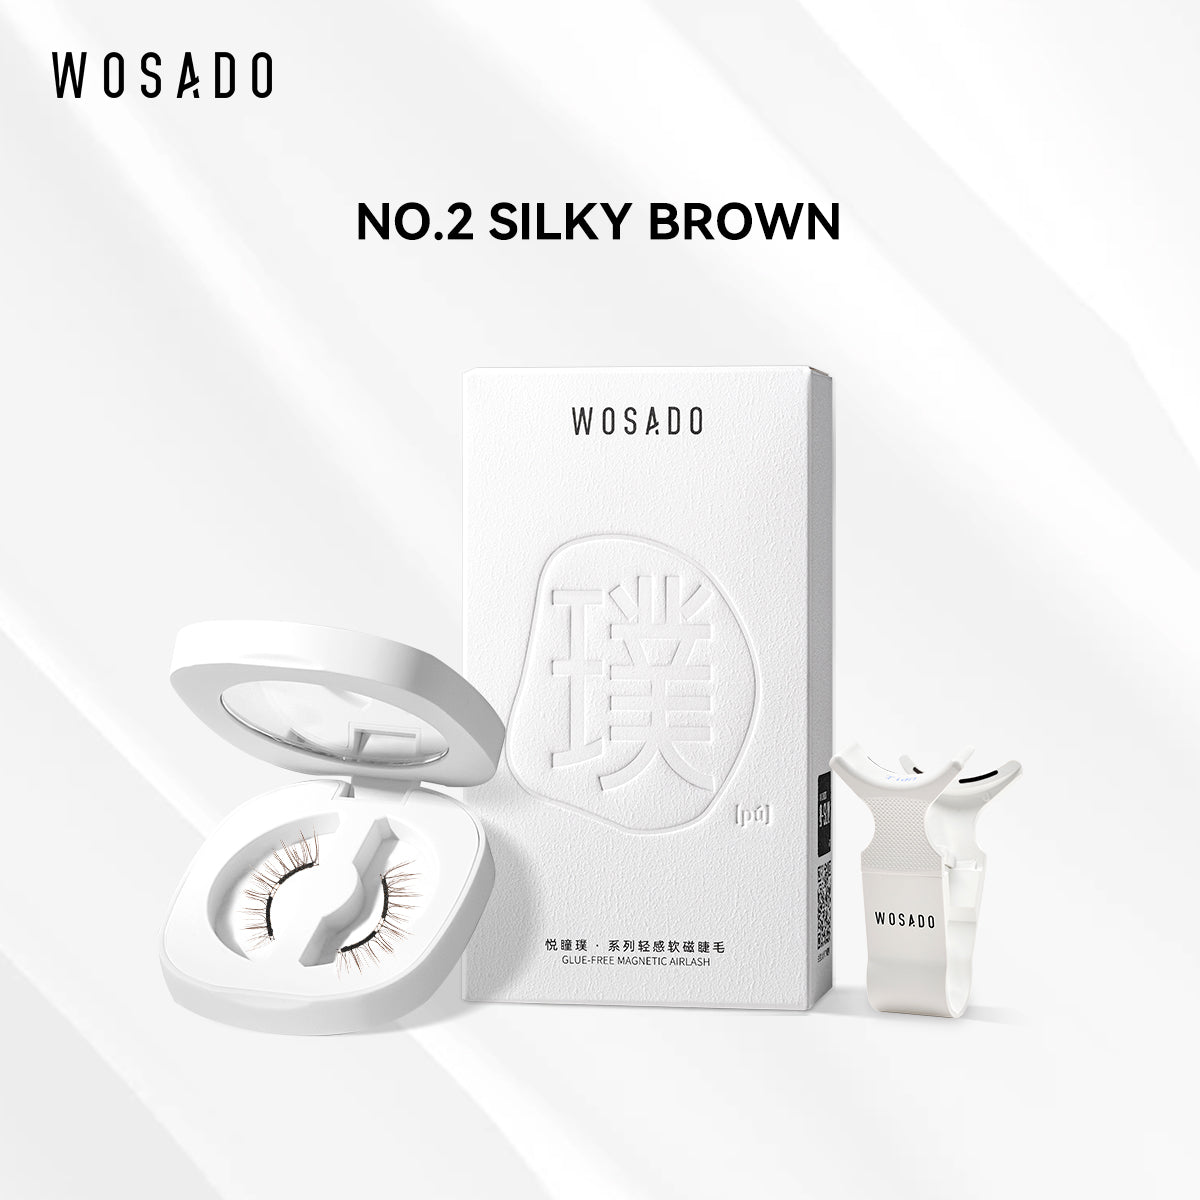 【WOSADO】NO.2 Silky Brown